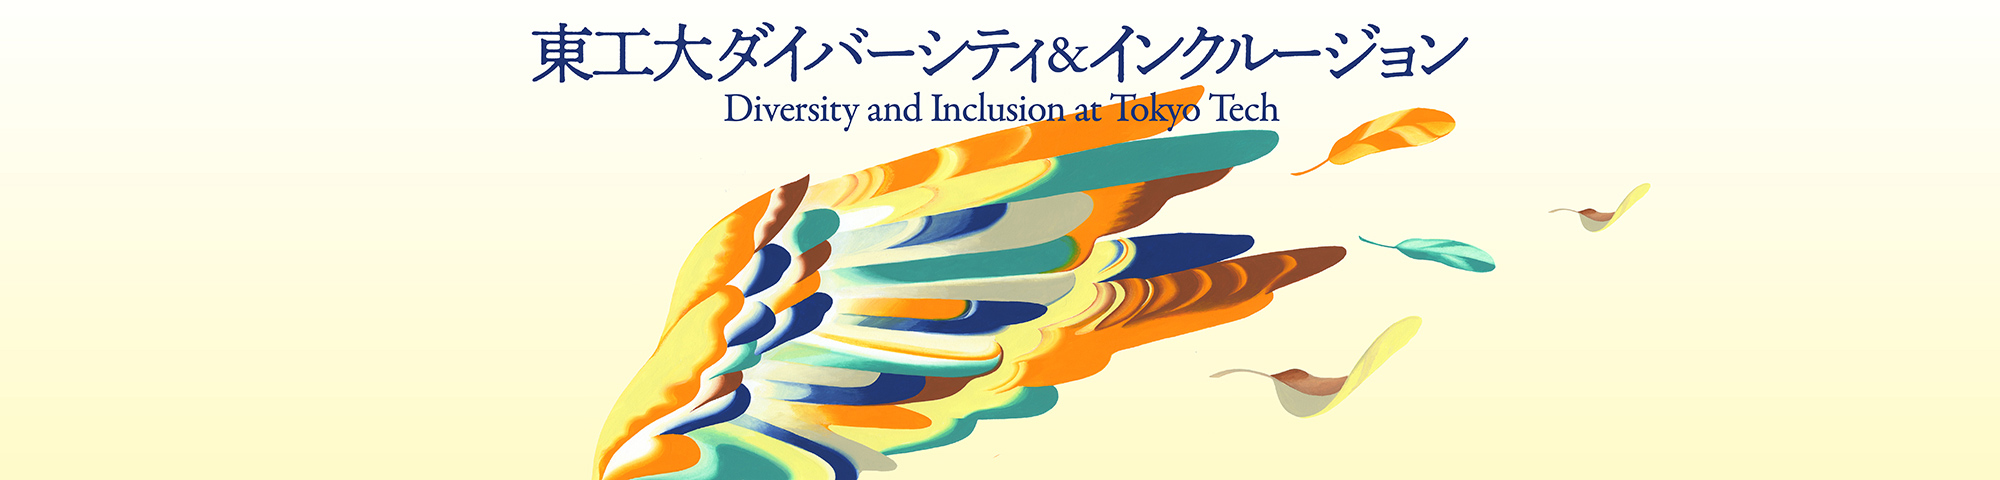 東工大ダイバーシティ&インクルージョン Diversity abd Inclusion at Tokyo Tech